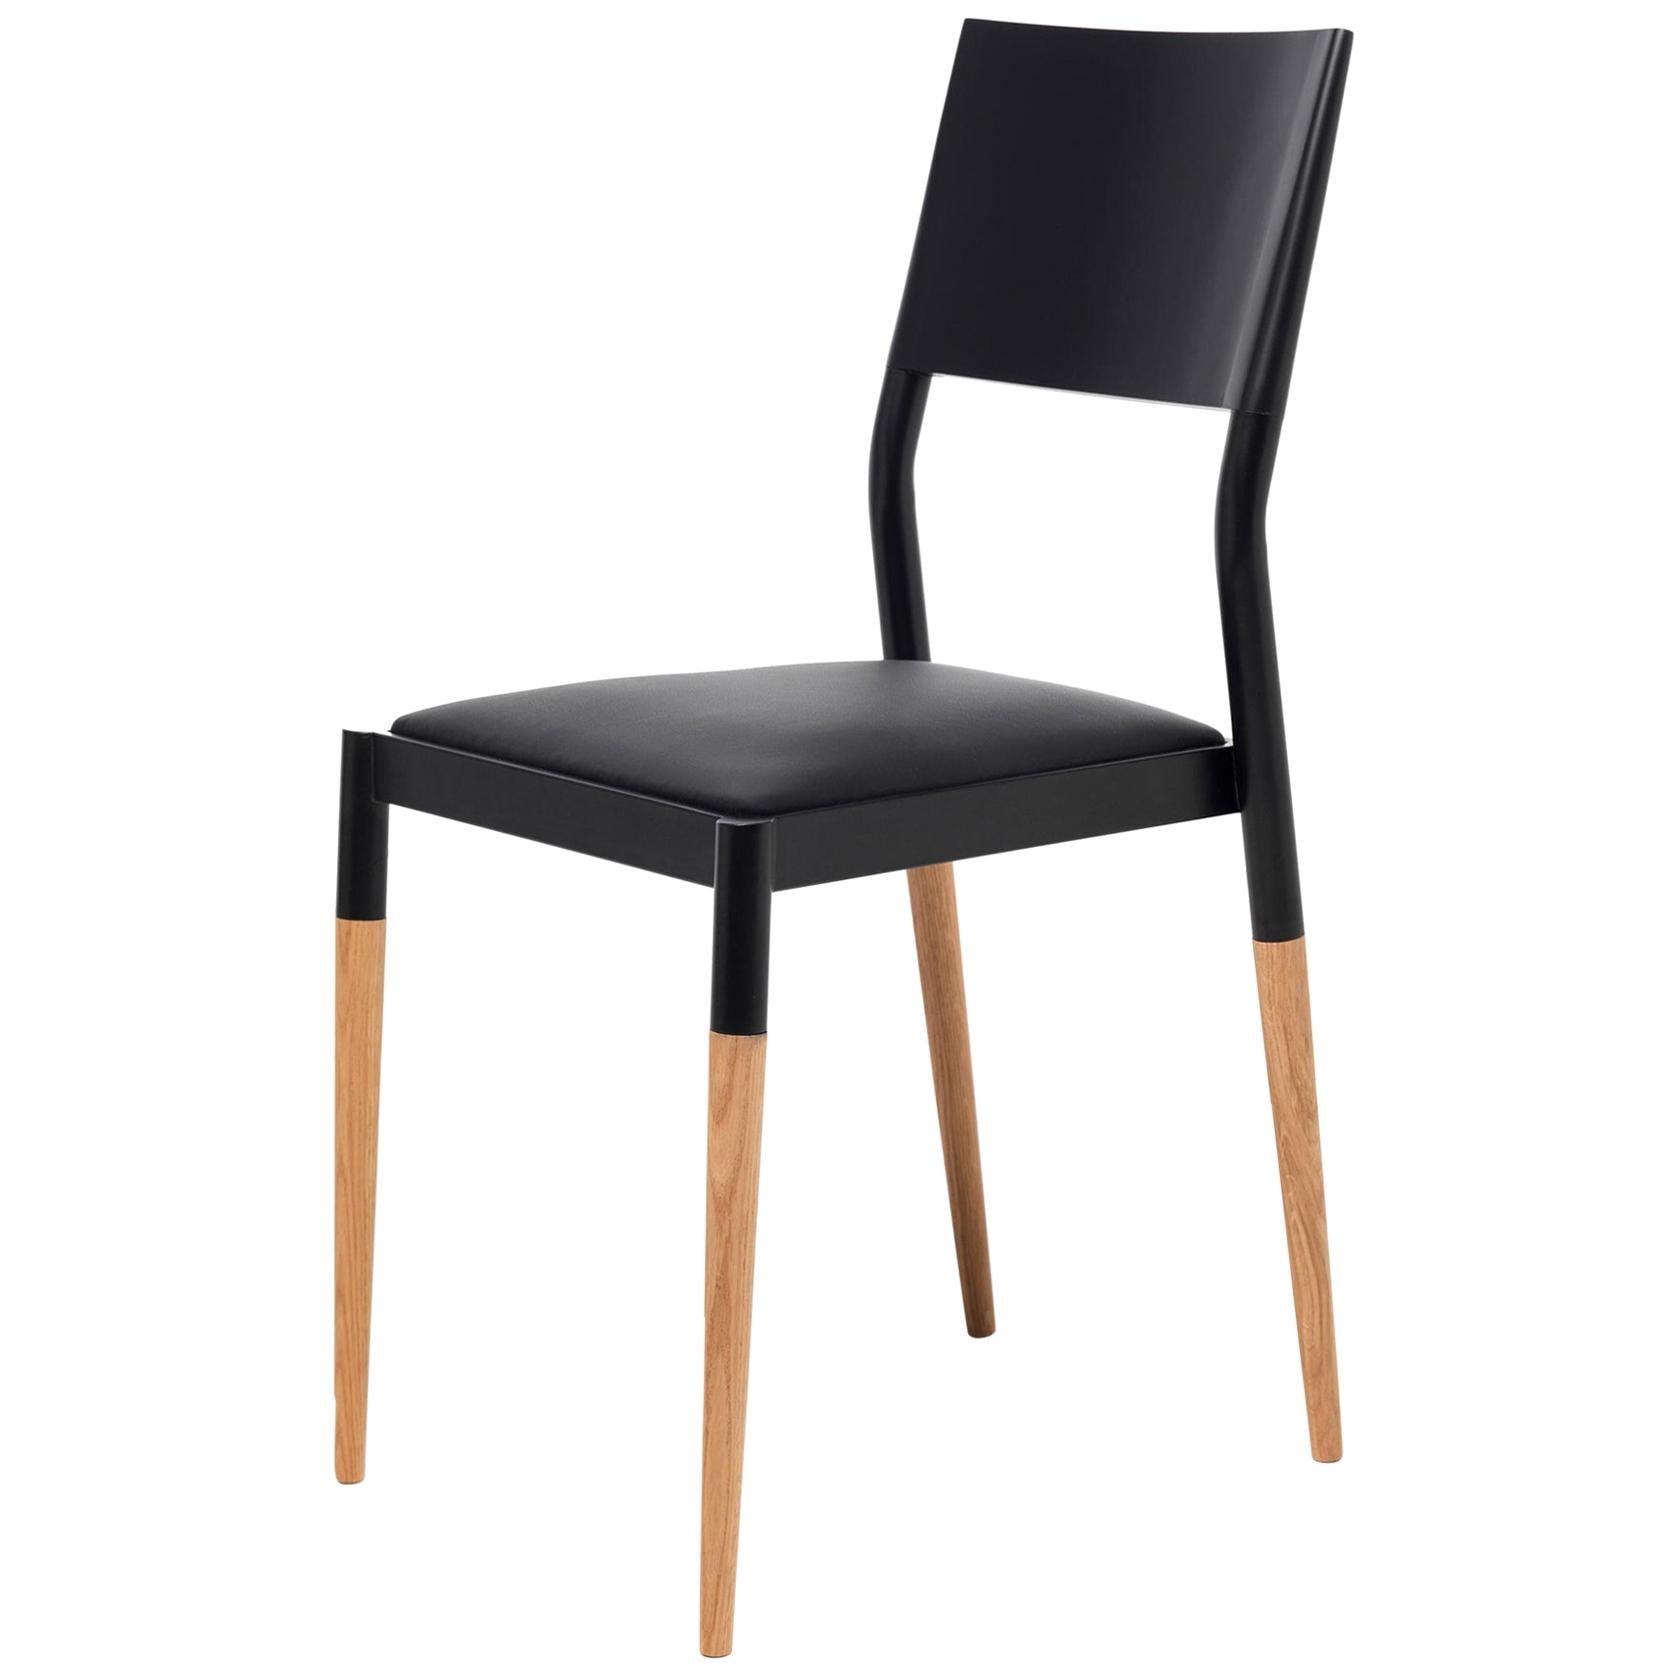 Moderner Stuhl aus Stahl und Holz des 21. Jahrhunderts mit gepolstertem Ledersitz